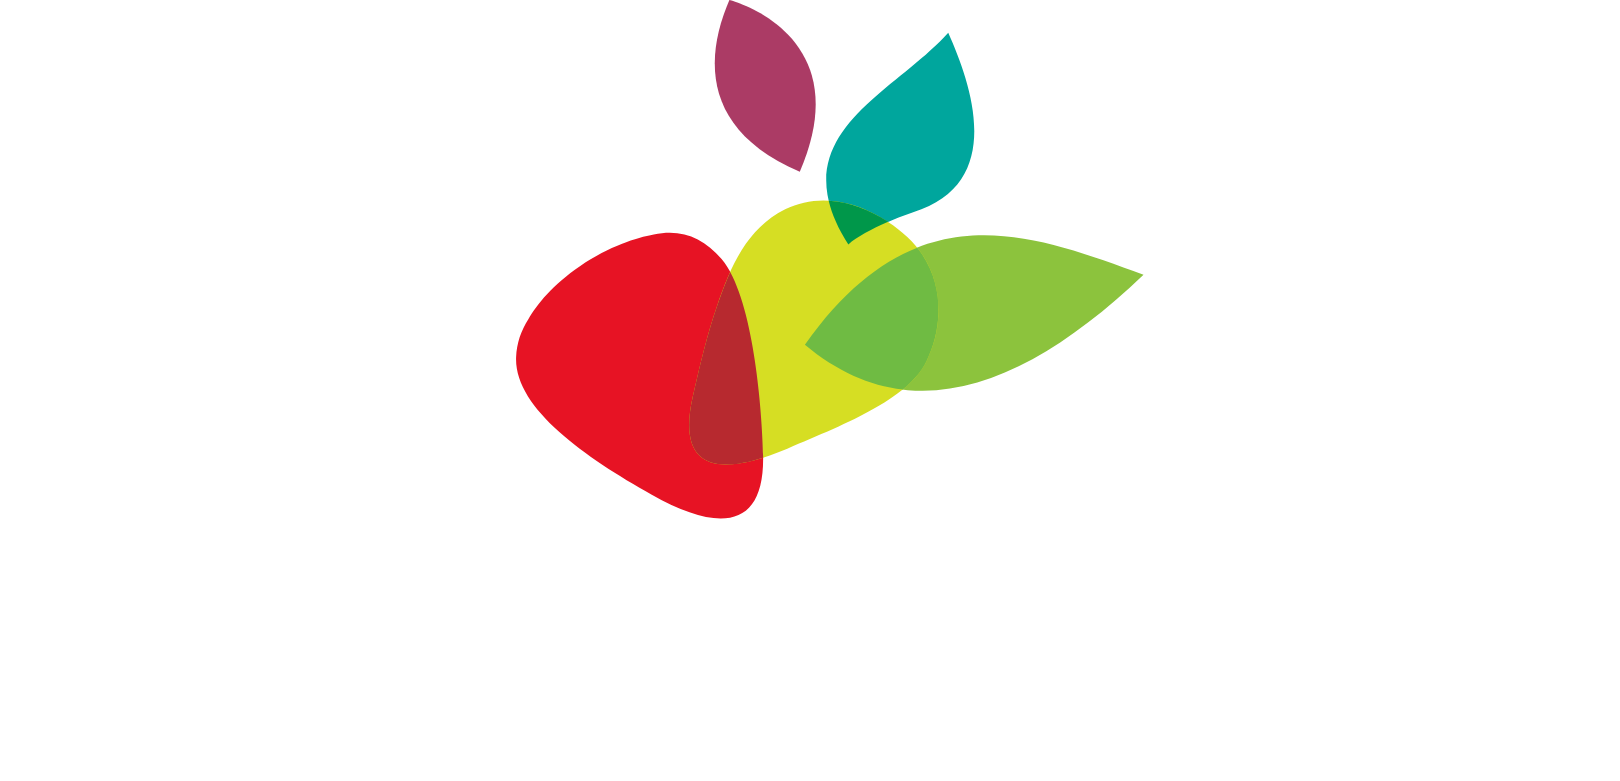 J.M. Smucker Company logo large for dark backgrounds (transparent PNG)